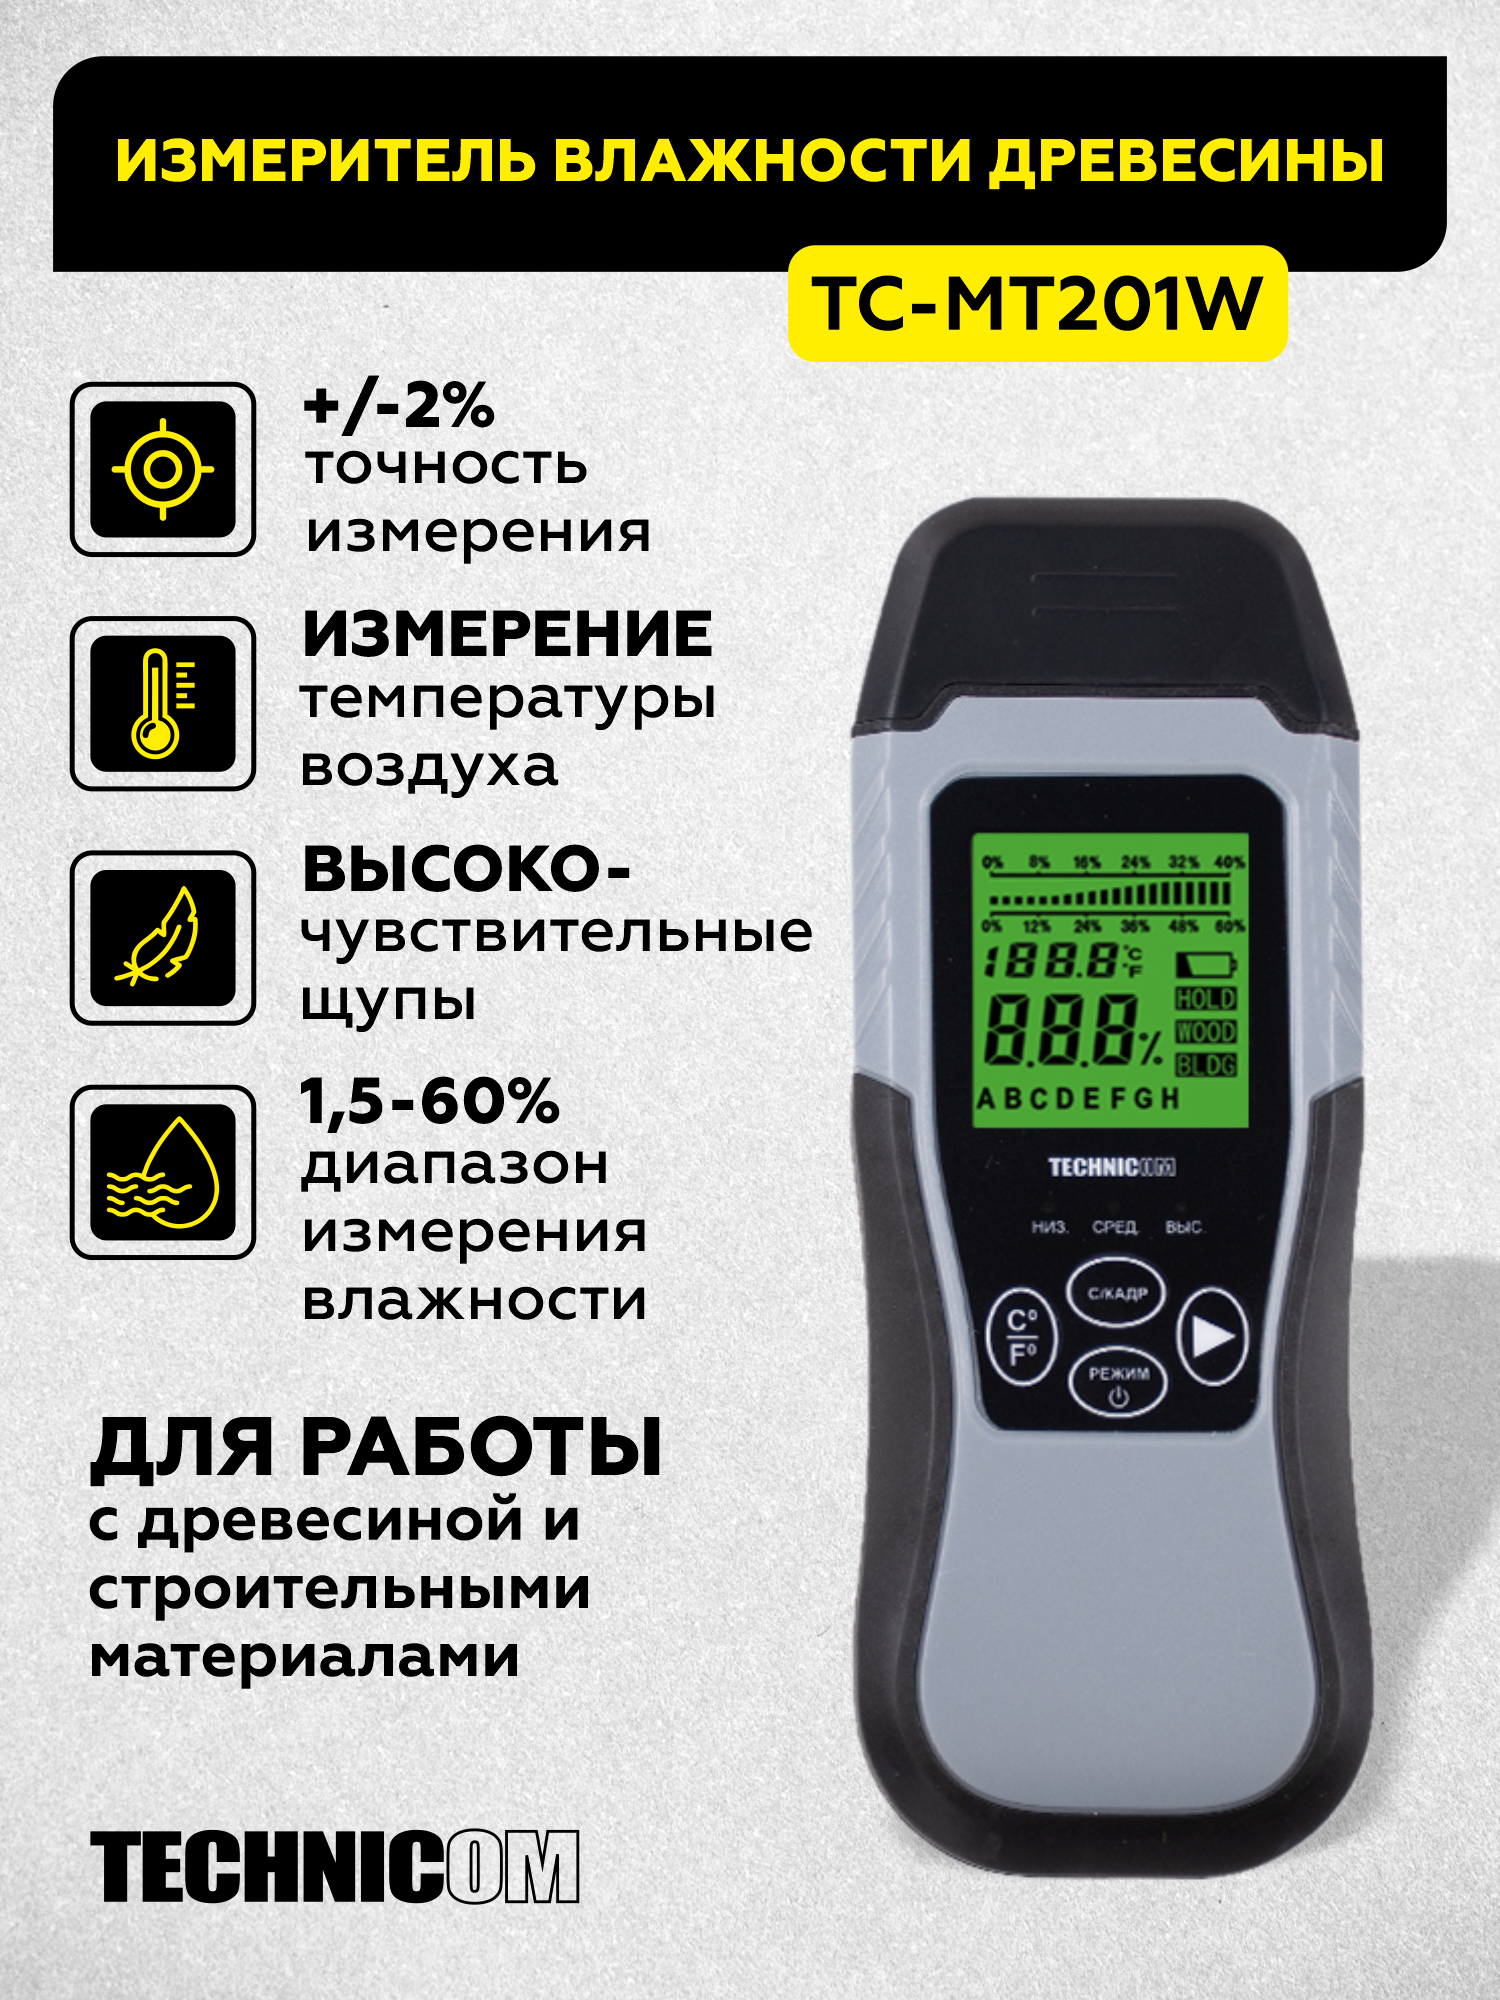 Электронный измеритель влажности древесины TECHNICOM TC-MT201W